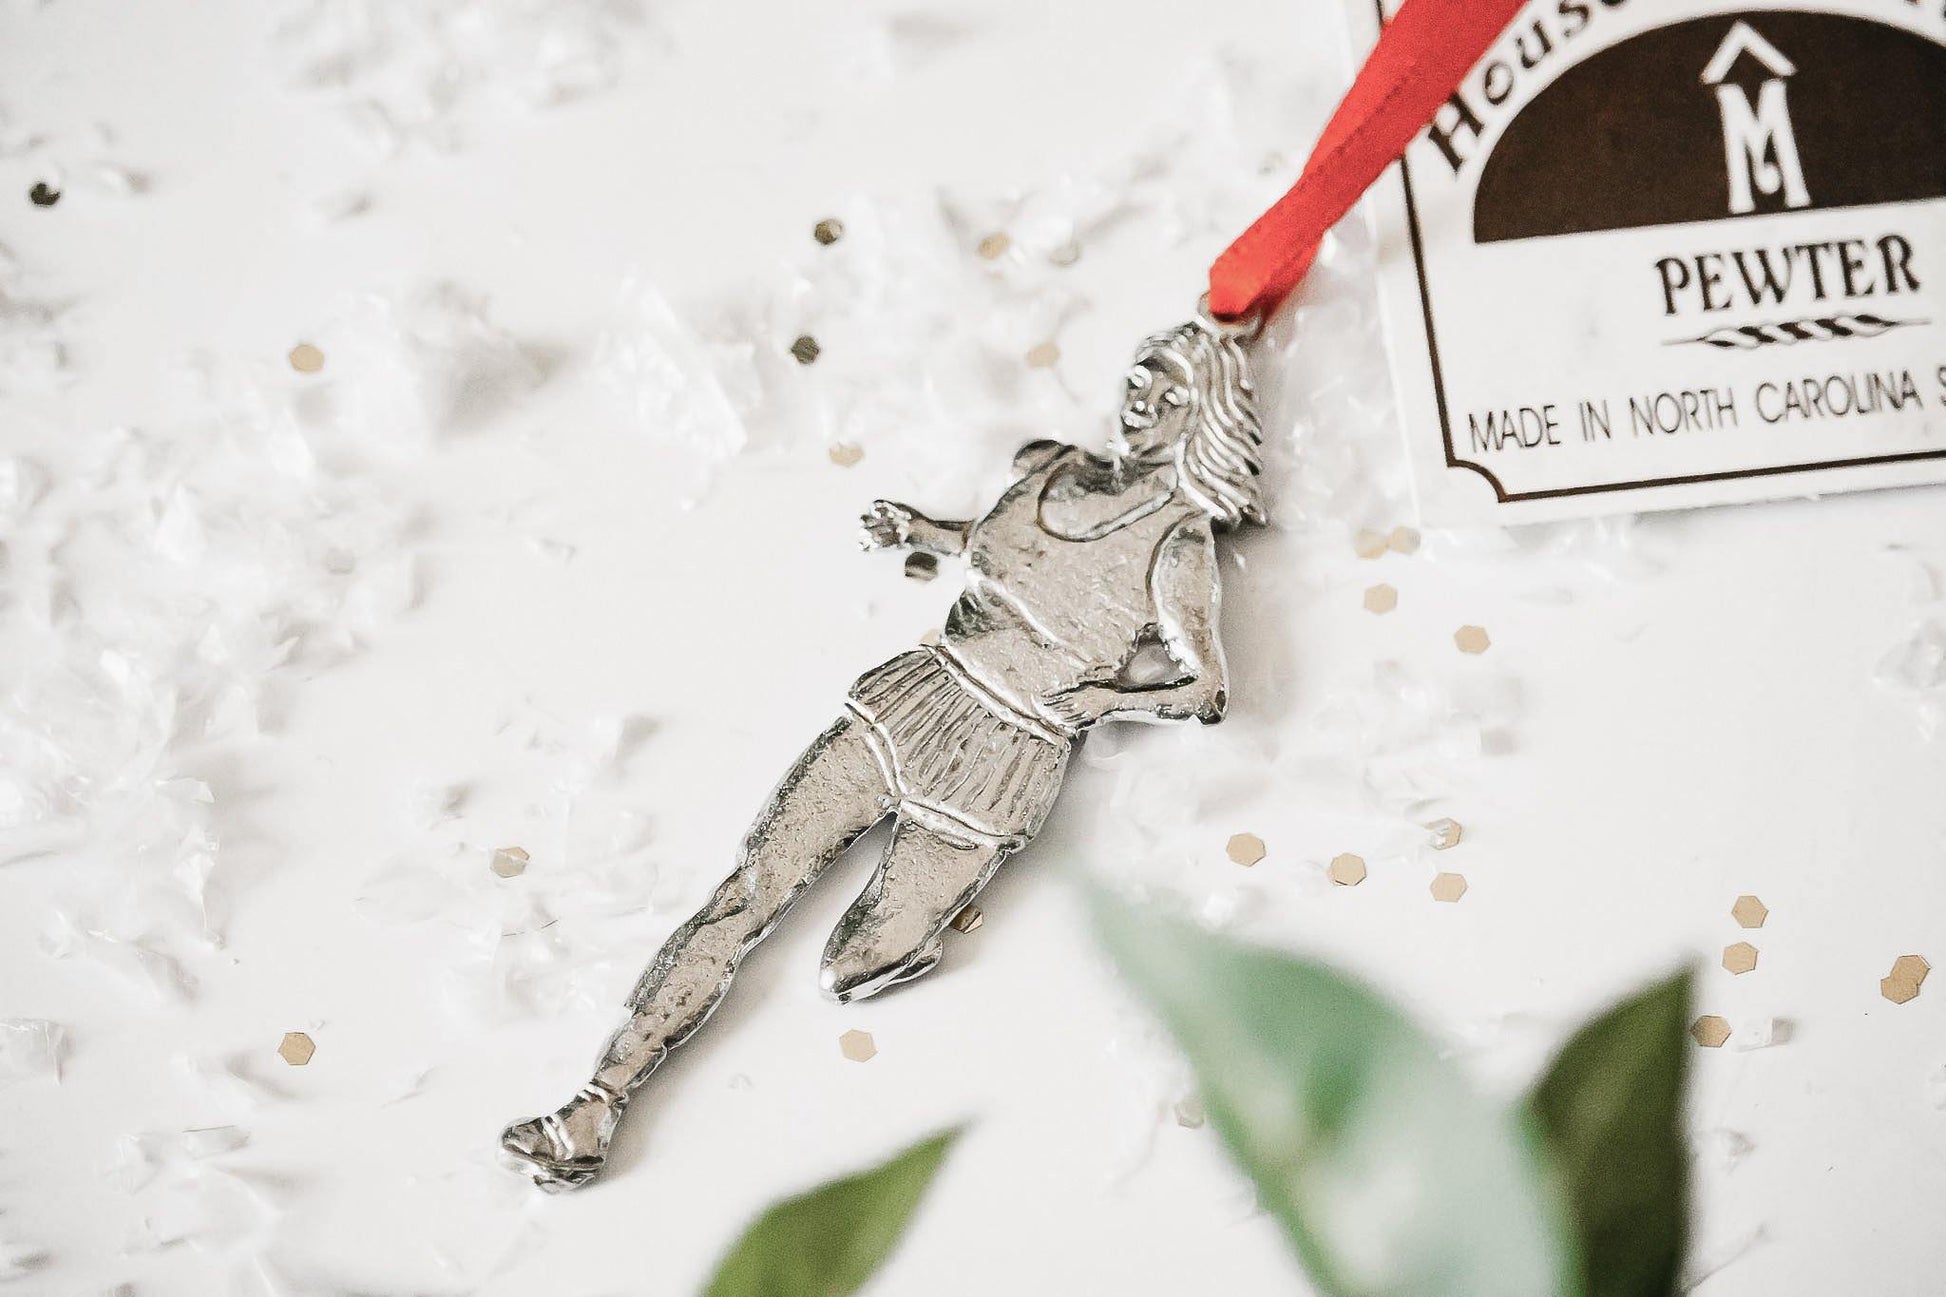 Handmade Female Triathlon Runner Swimmer Bike Christmas Ornament Gift Set - House of Morgan Pewter